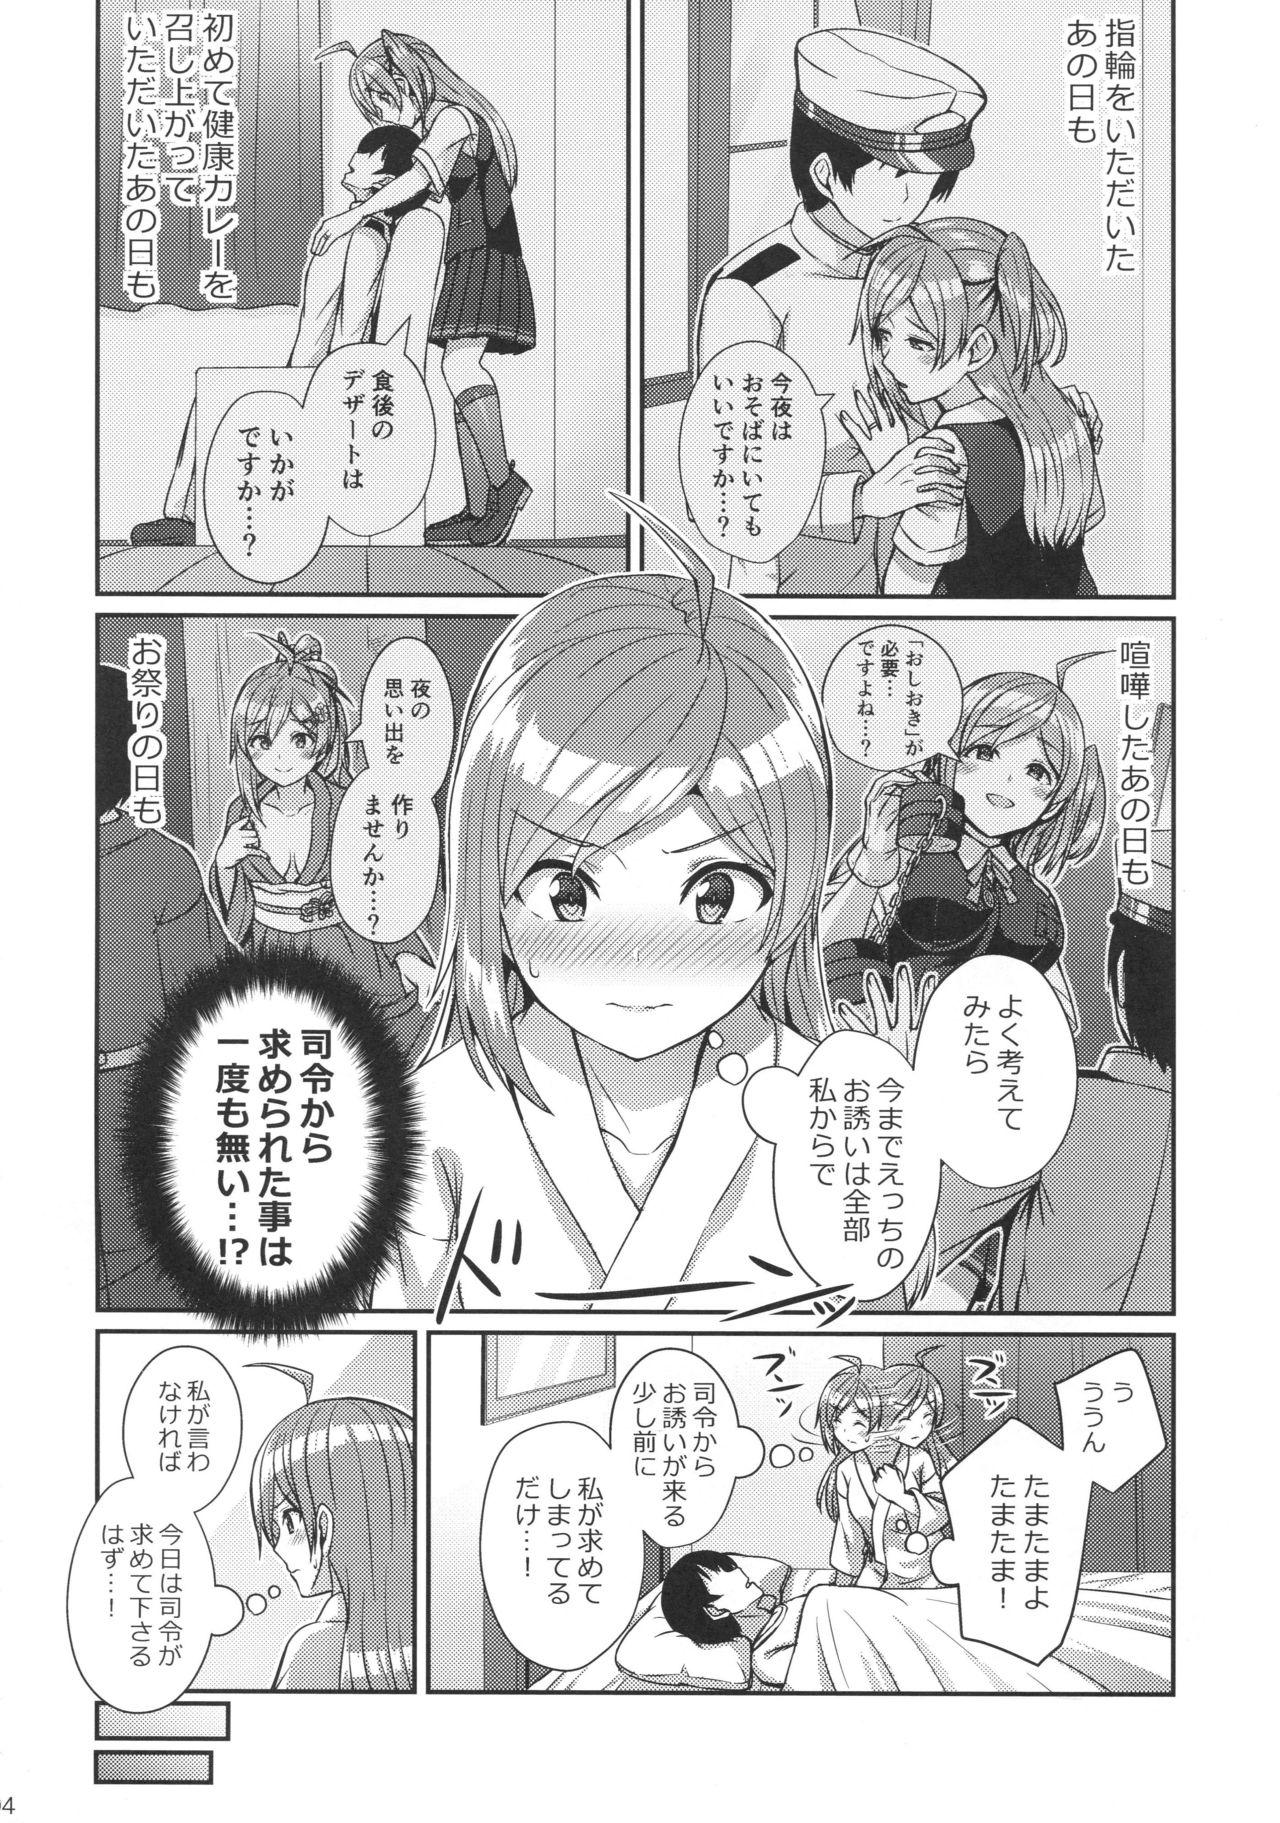 Tites Hagikaze wo Aishite Hoshii desu. - Kantai collection Cartoon - Page 3